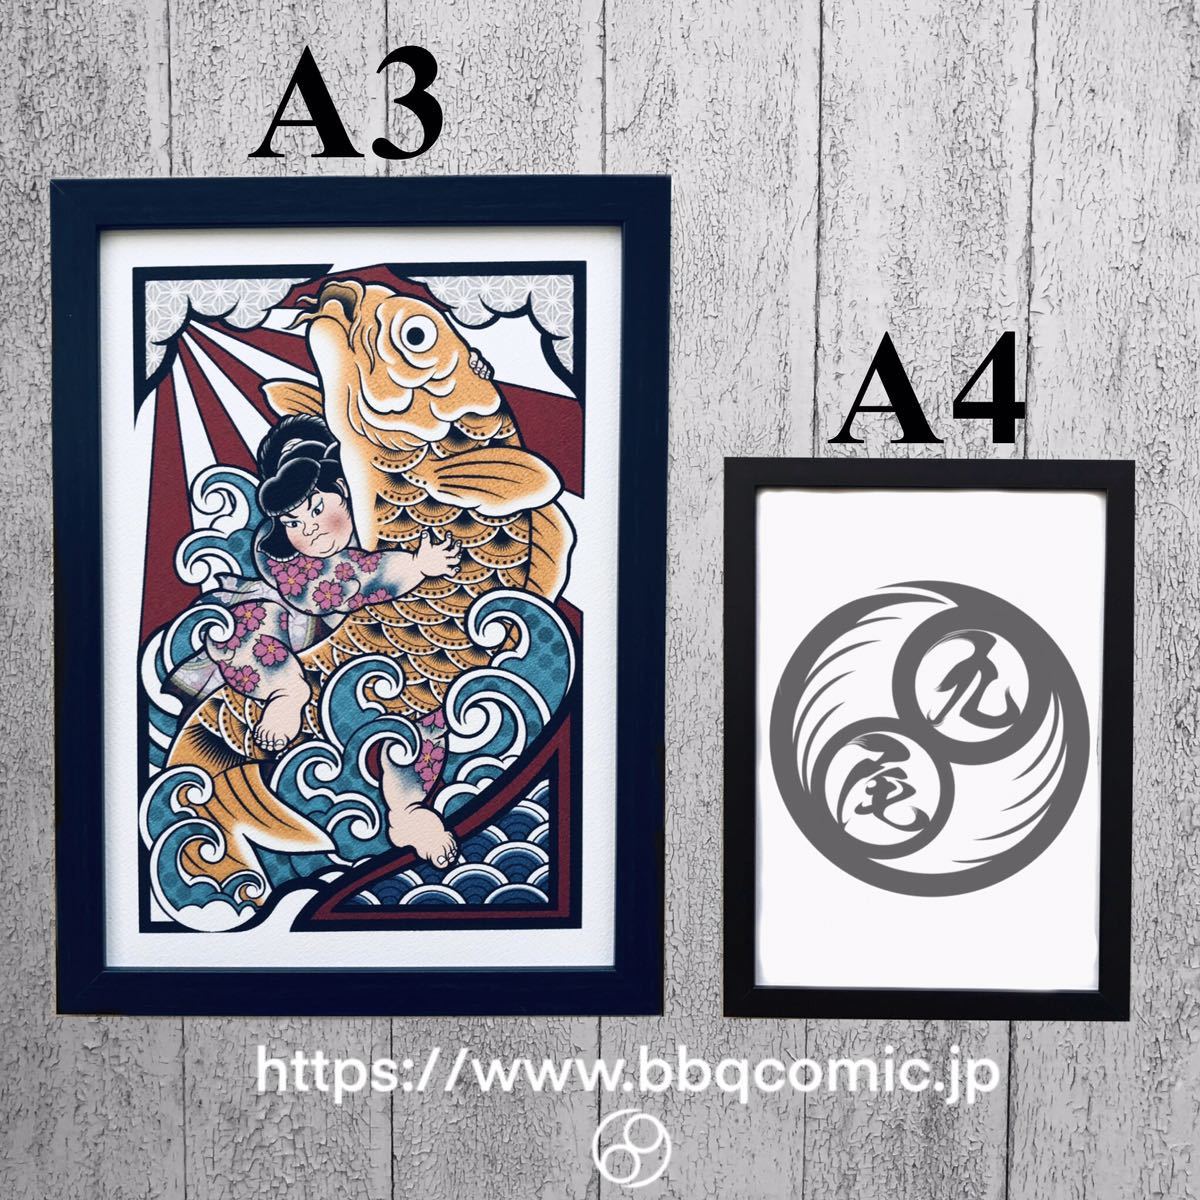 Okyu Illustration Custom Ukiyo-e Oniwakarinosuke Carp Catching A3 Size Framed Art Frame, Painting, Ukiyo-e, Prints, Warrior paintings